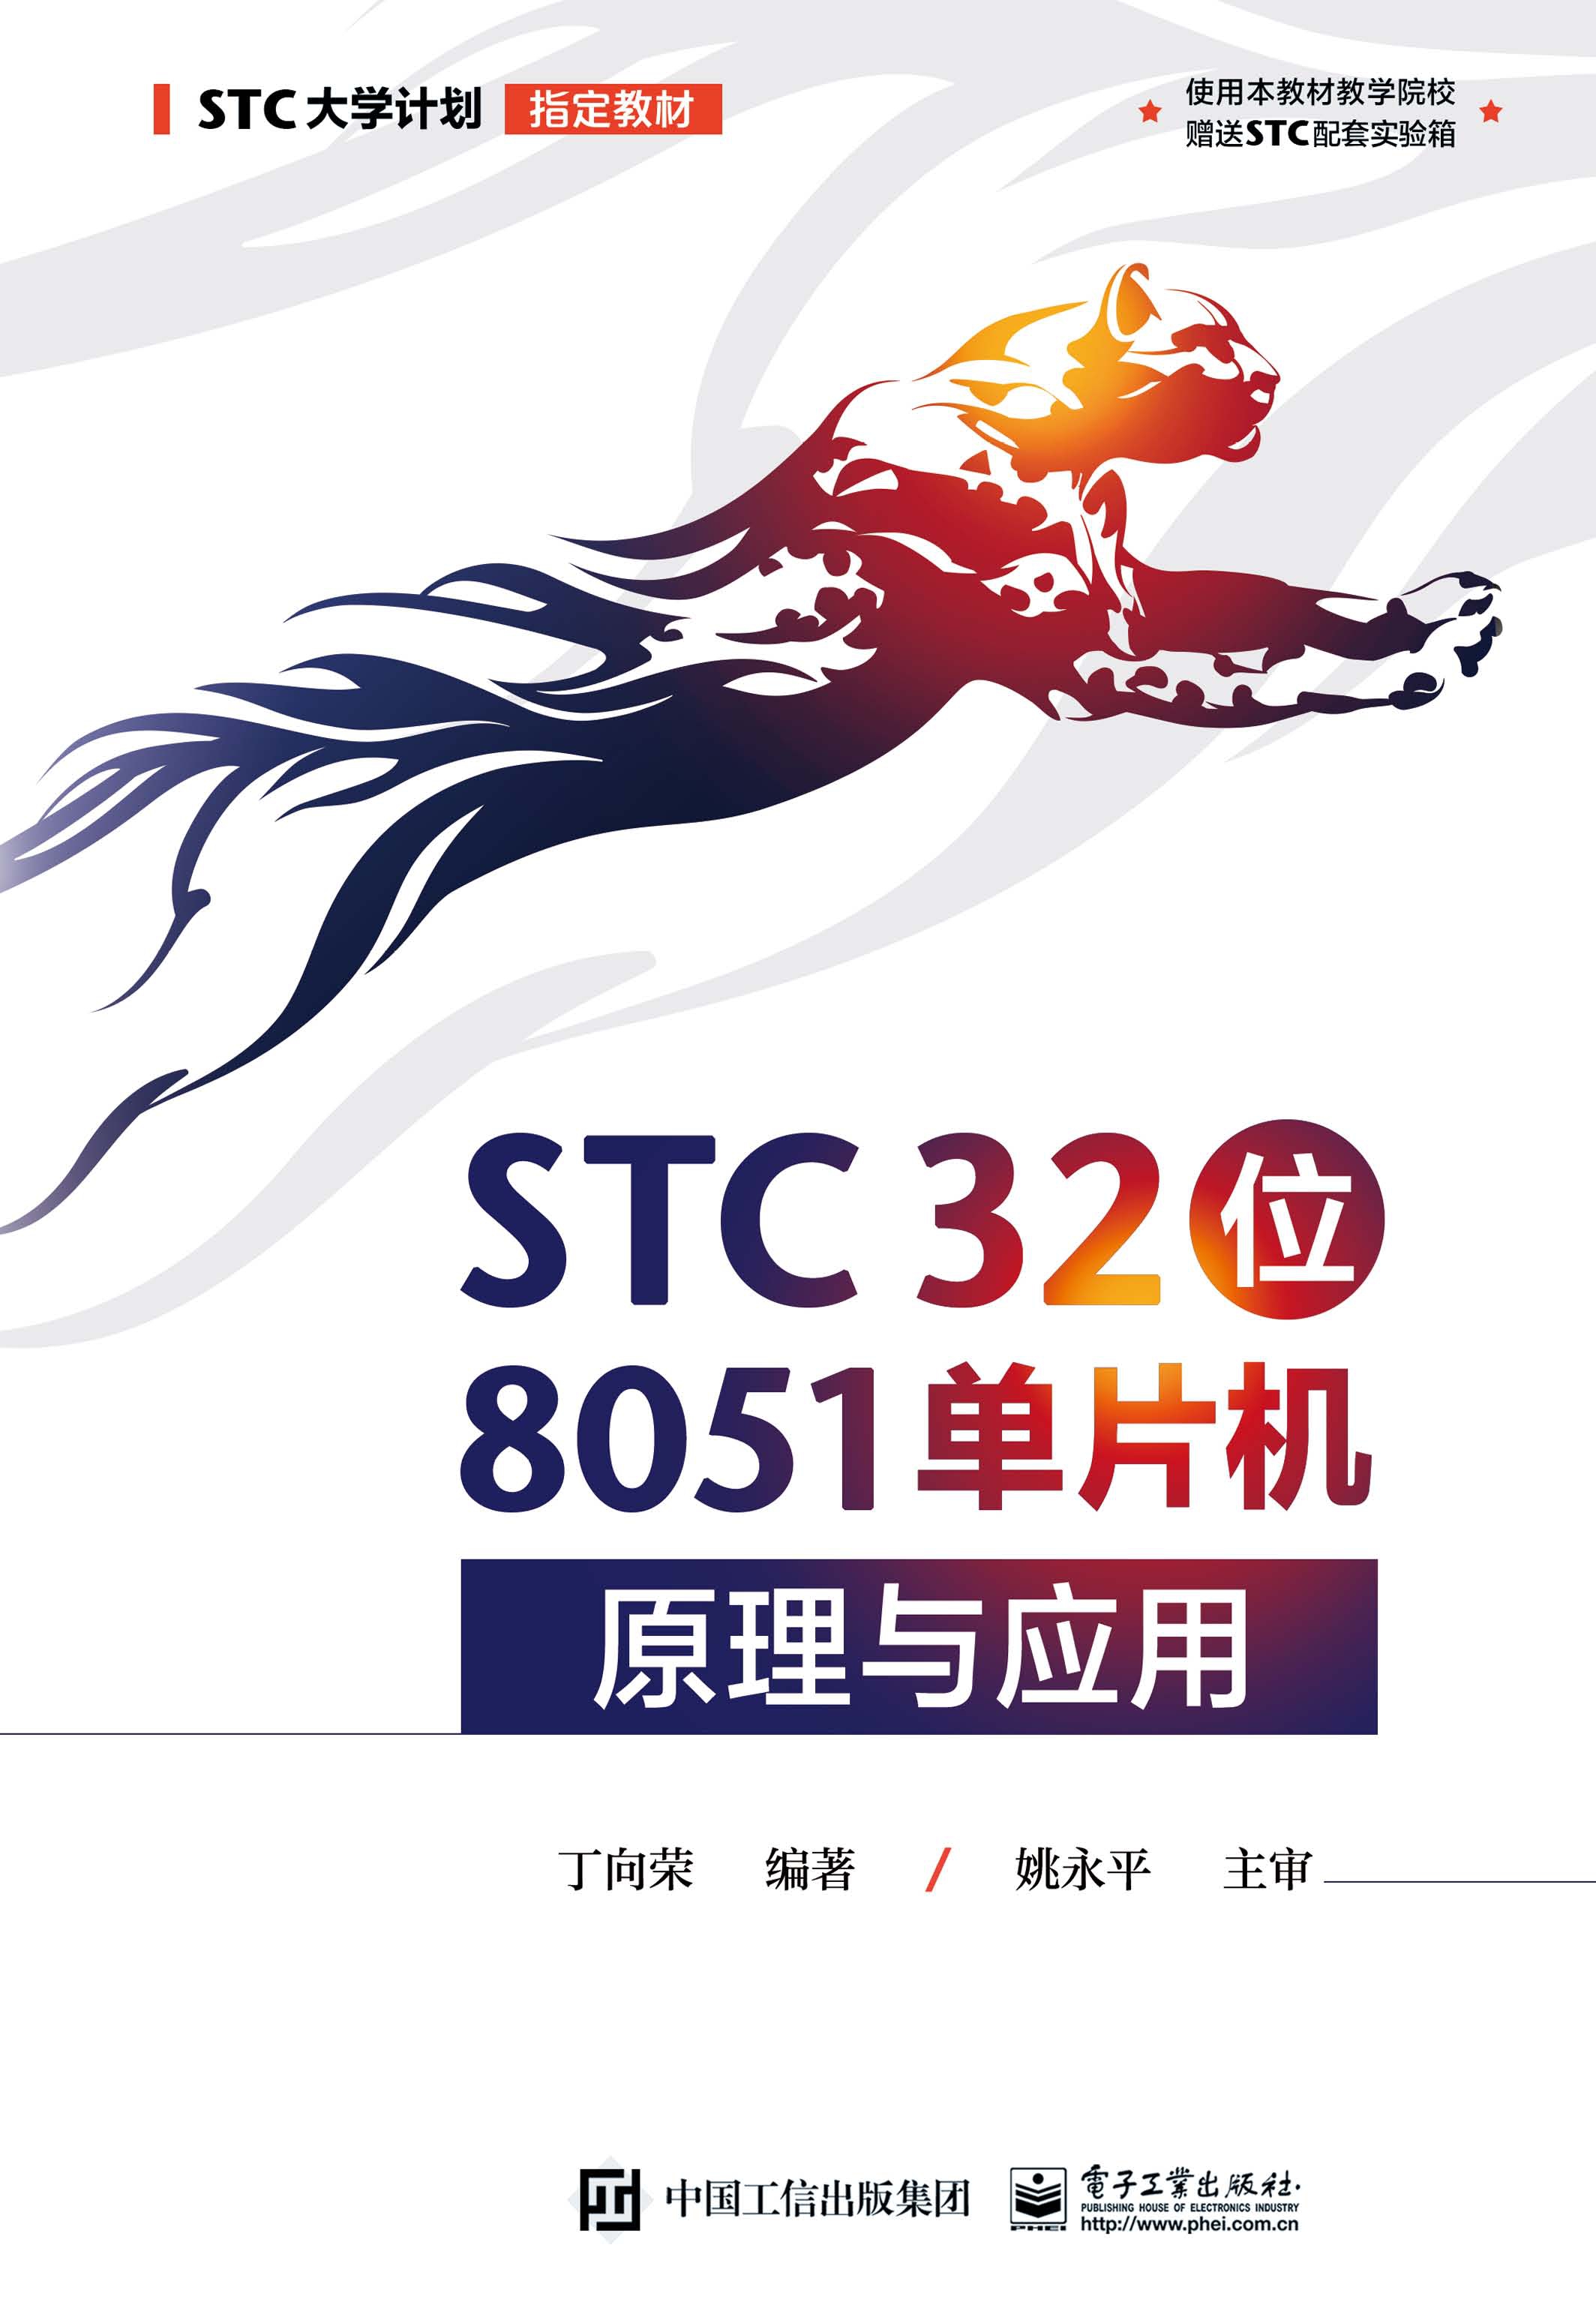 STC 32位 8051单片机原理与应用